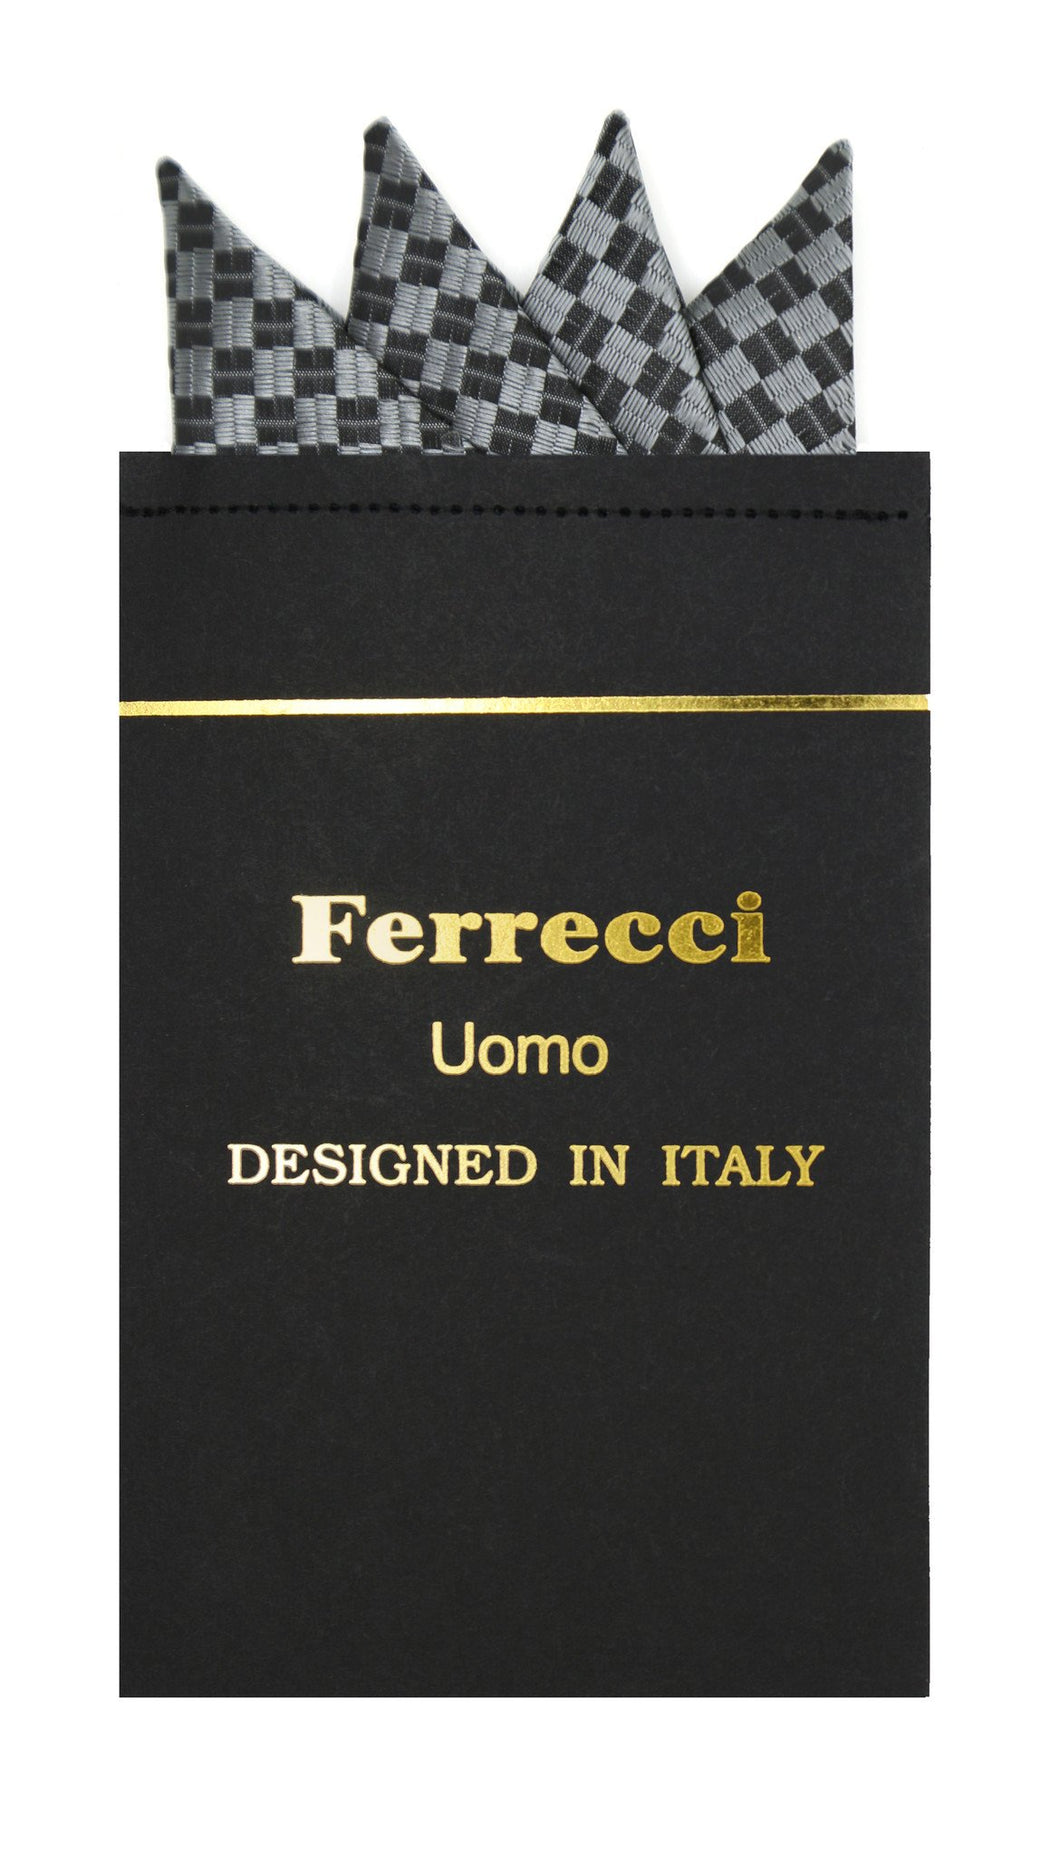 Pre-Folded Microfiber Silver Black Geometric Handkerchief Pocket Square - Ferrecci USA 